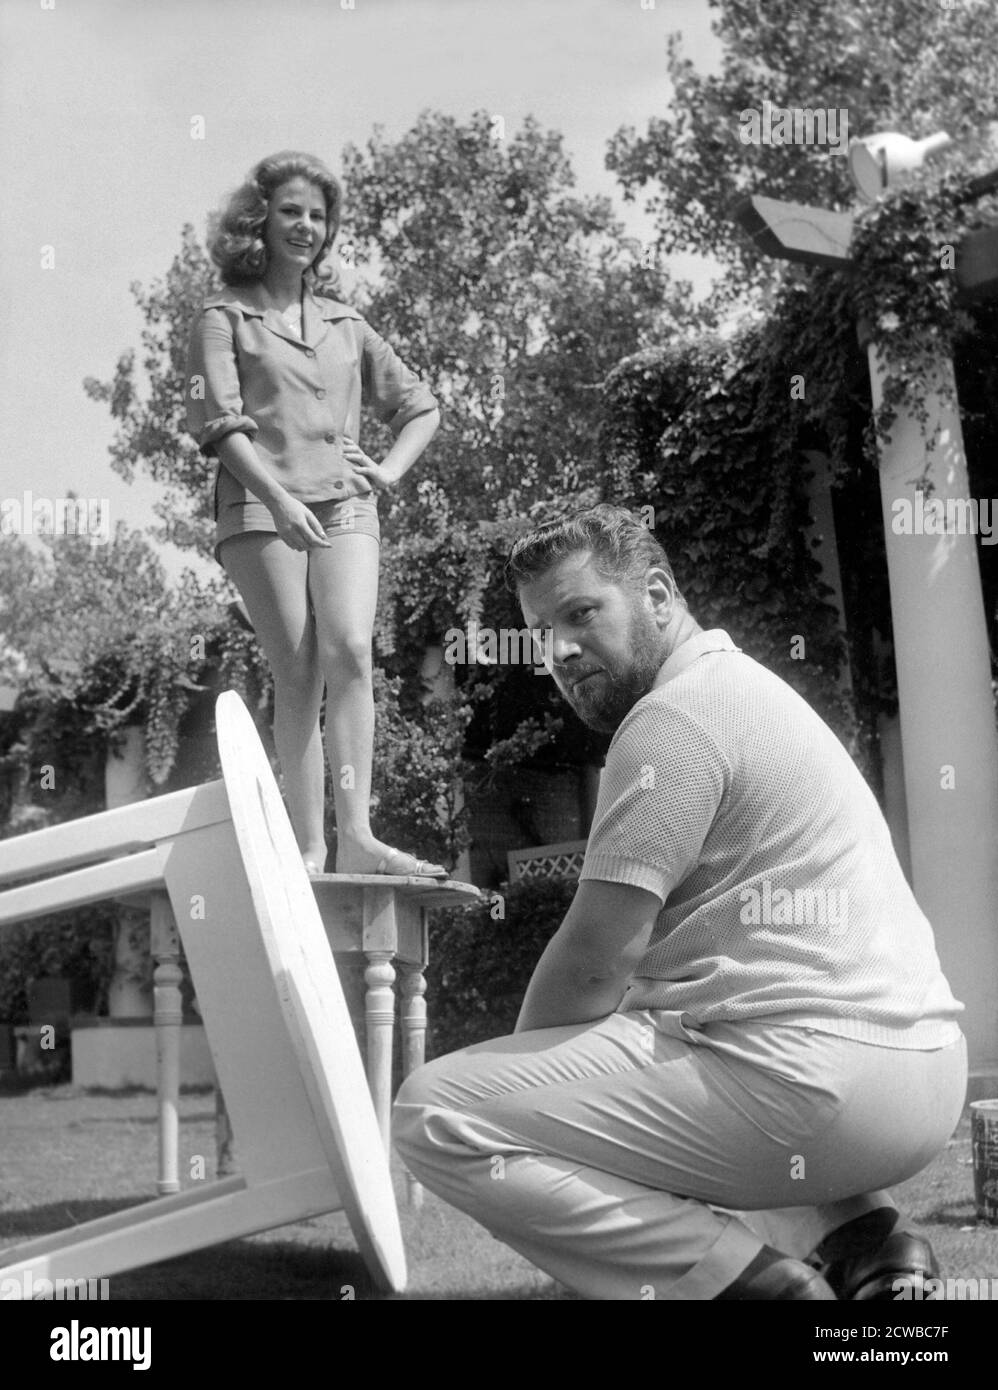 Susy Golgi and Peter Ustinov at 21st International Film Festival, Venice , august 1960 --- Venezia, 08 / 1960. 21° Mostra Internazionale d'Arte Cinematografica. Nella foto: Susy Golgi e Peter Ustinov. Stock Photo